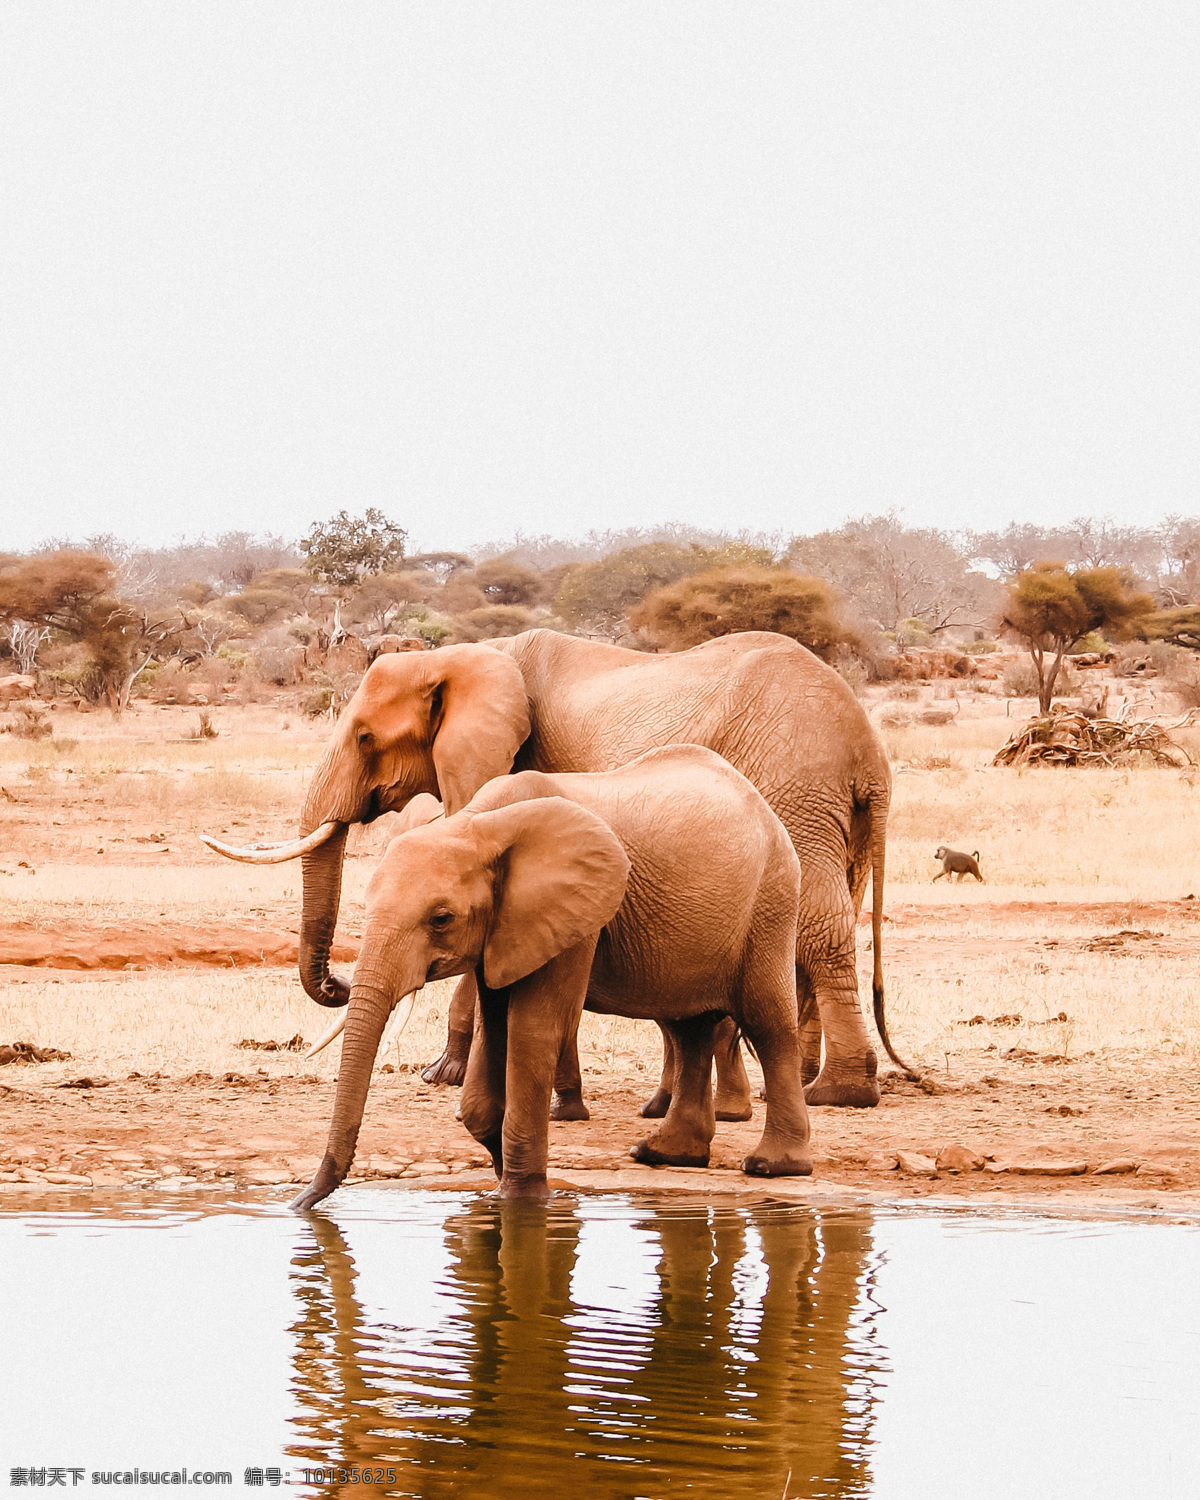 大象 小象 一起 象 象牙 象鼻 象群 非洲大象 非洲草原 象鼻子 泰国大象 印度大象 哺乳动物 亚洲大象 在一起 动物昆虫 生物世界 野生动物